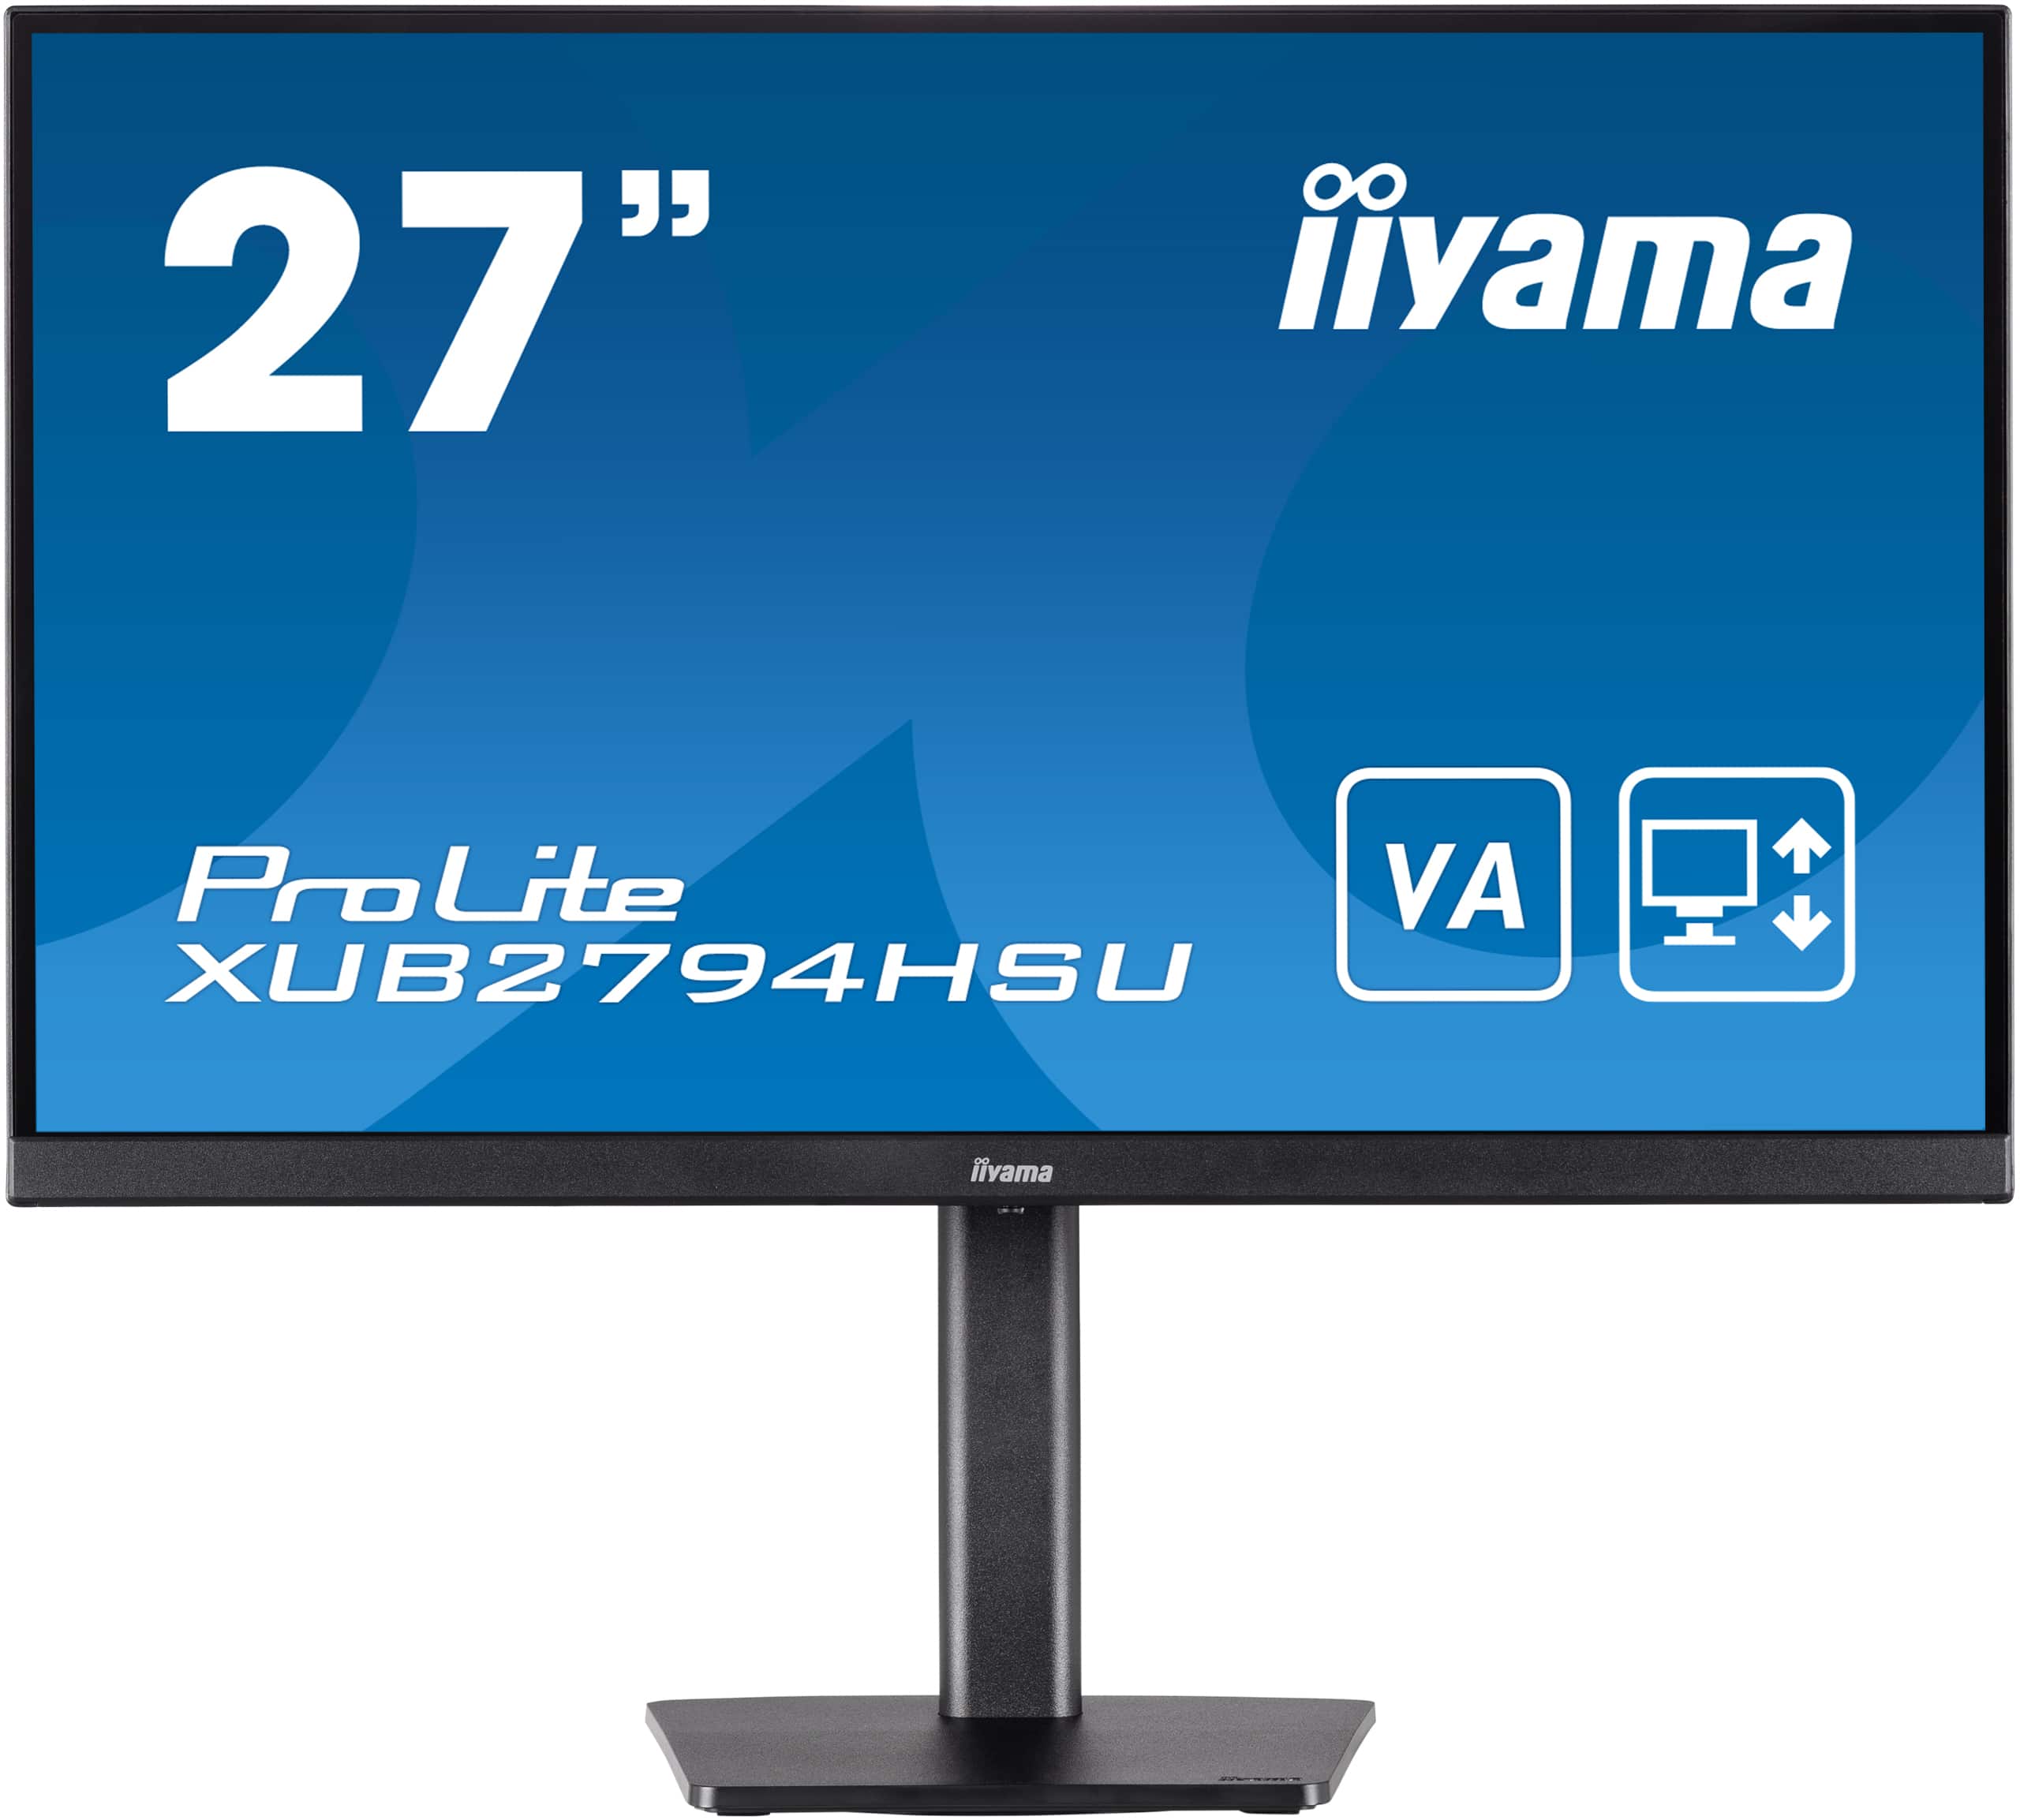 Iiyama ProLite XUB2794HSU-B1 | 27" (68,5cm) | Full HD Monitor mit VA-Panel-Technologie und einem höhenverstellbaren Standfuß